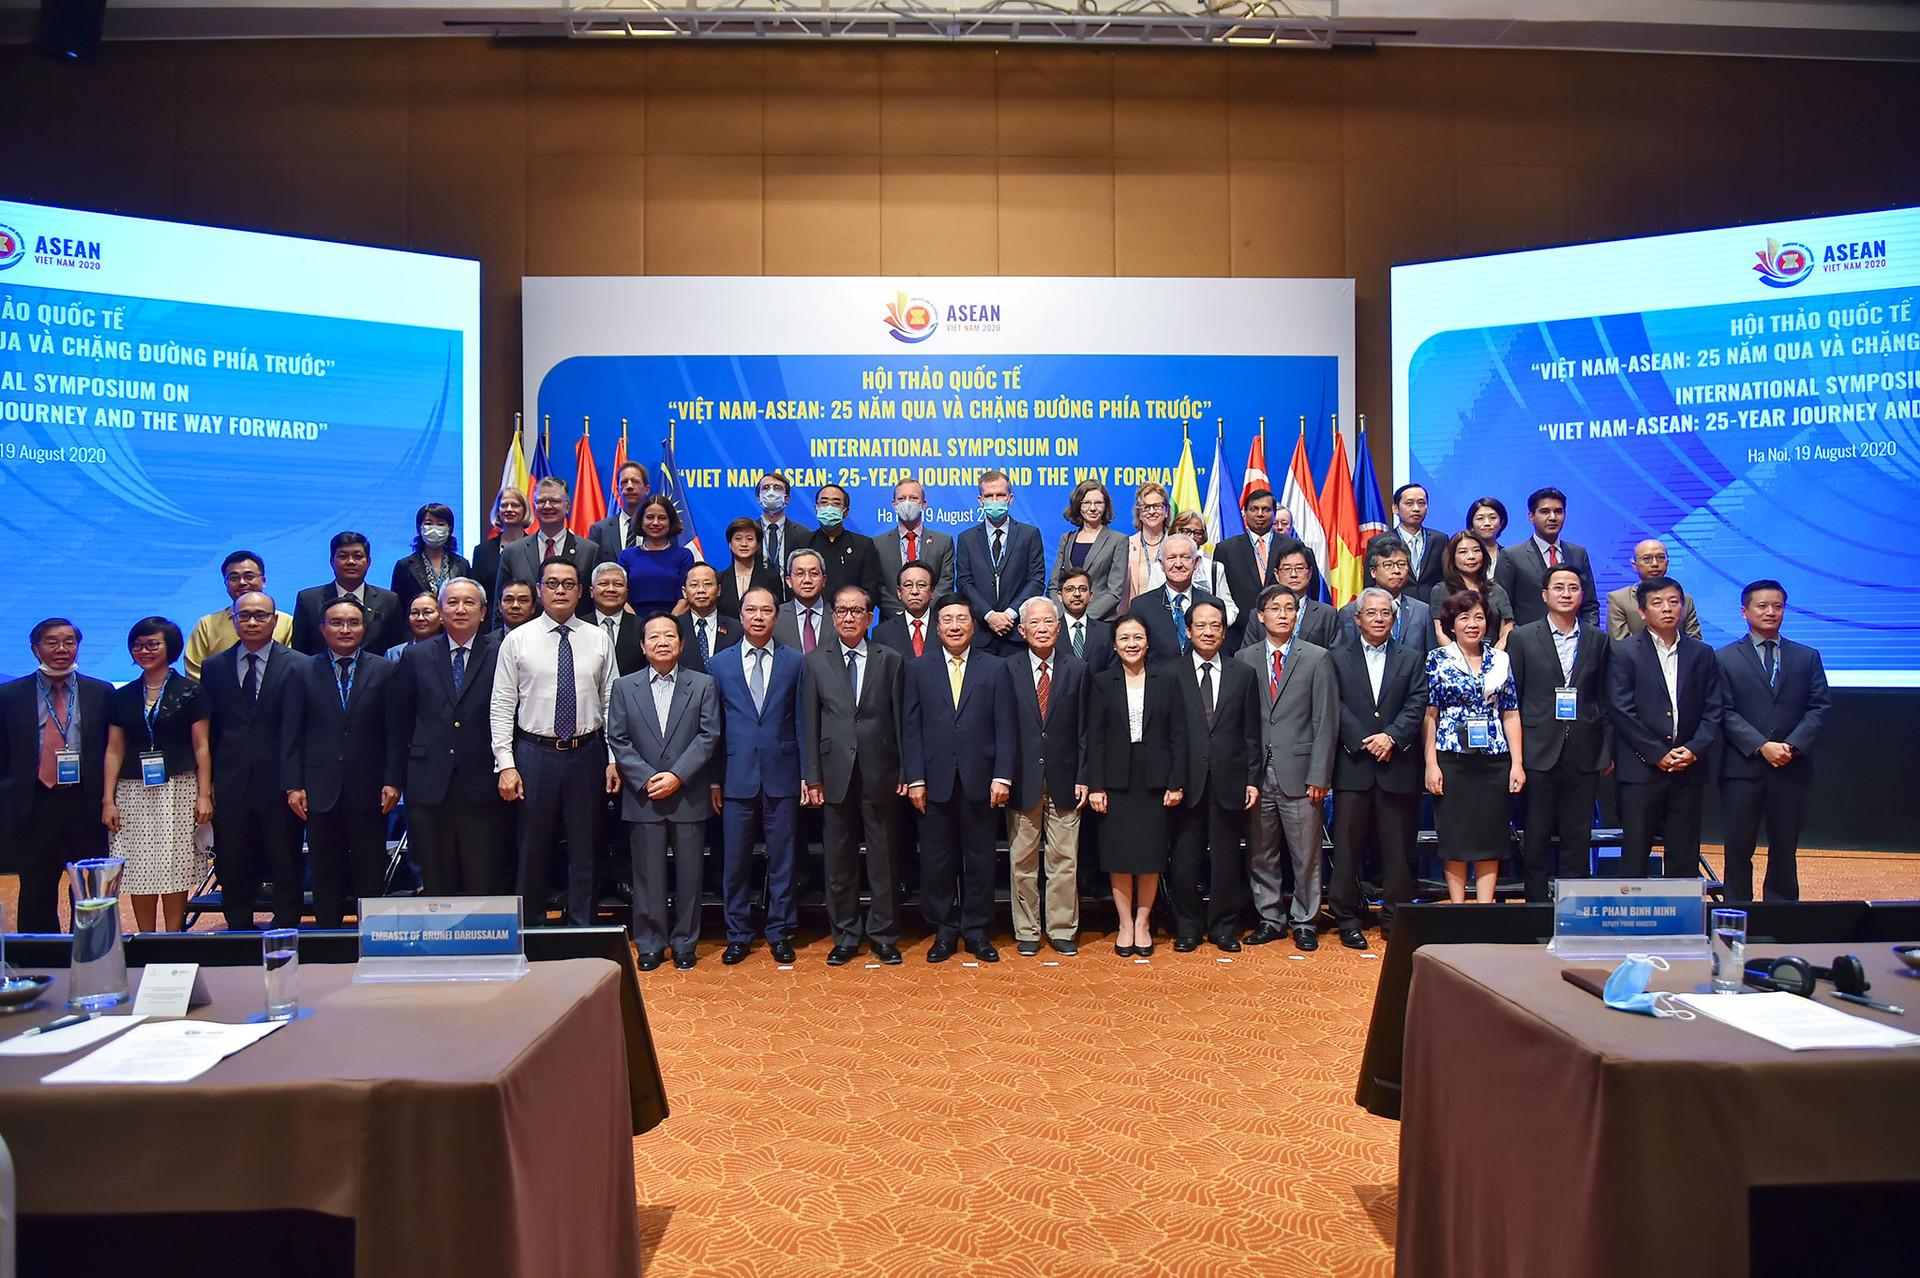 Việt Nam - ASEAN: 25 năm qua và chặng đường phía trước  - Ảnh 2.